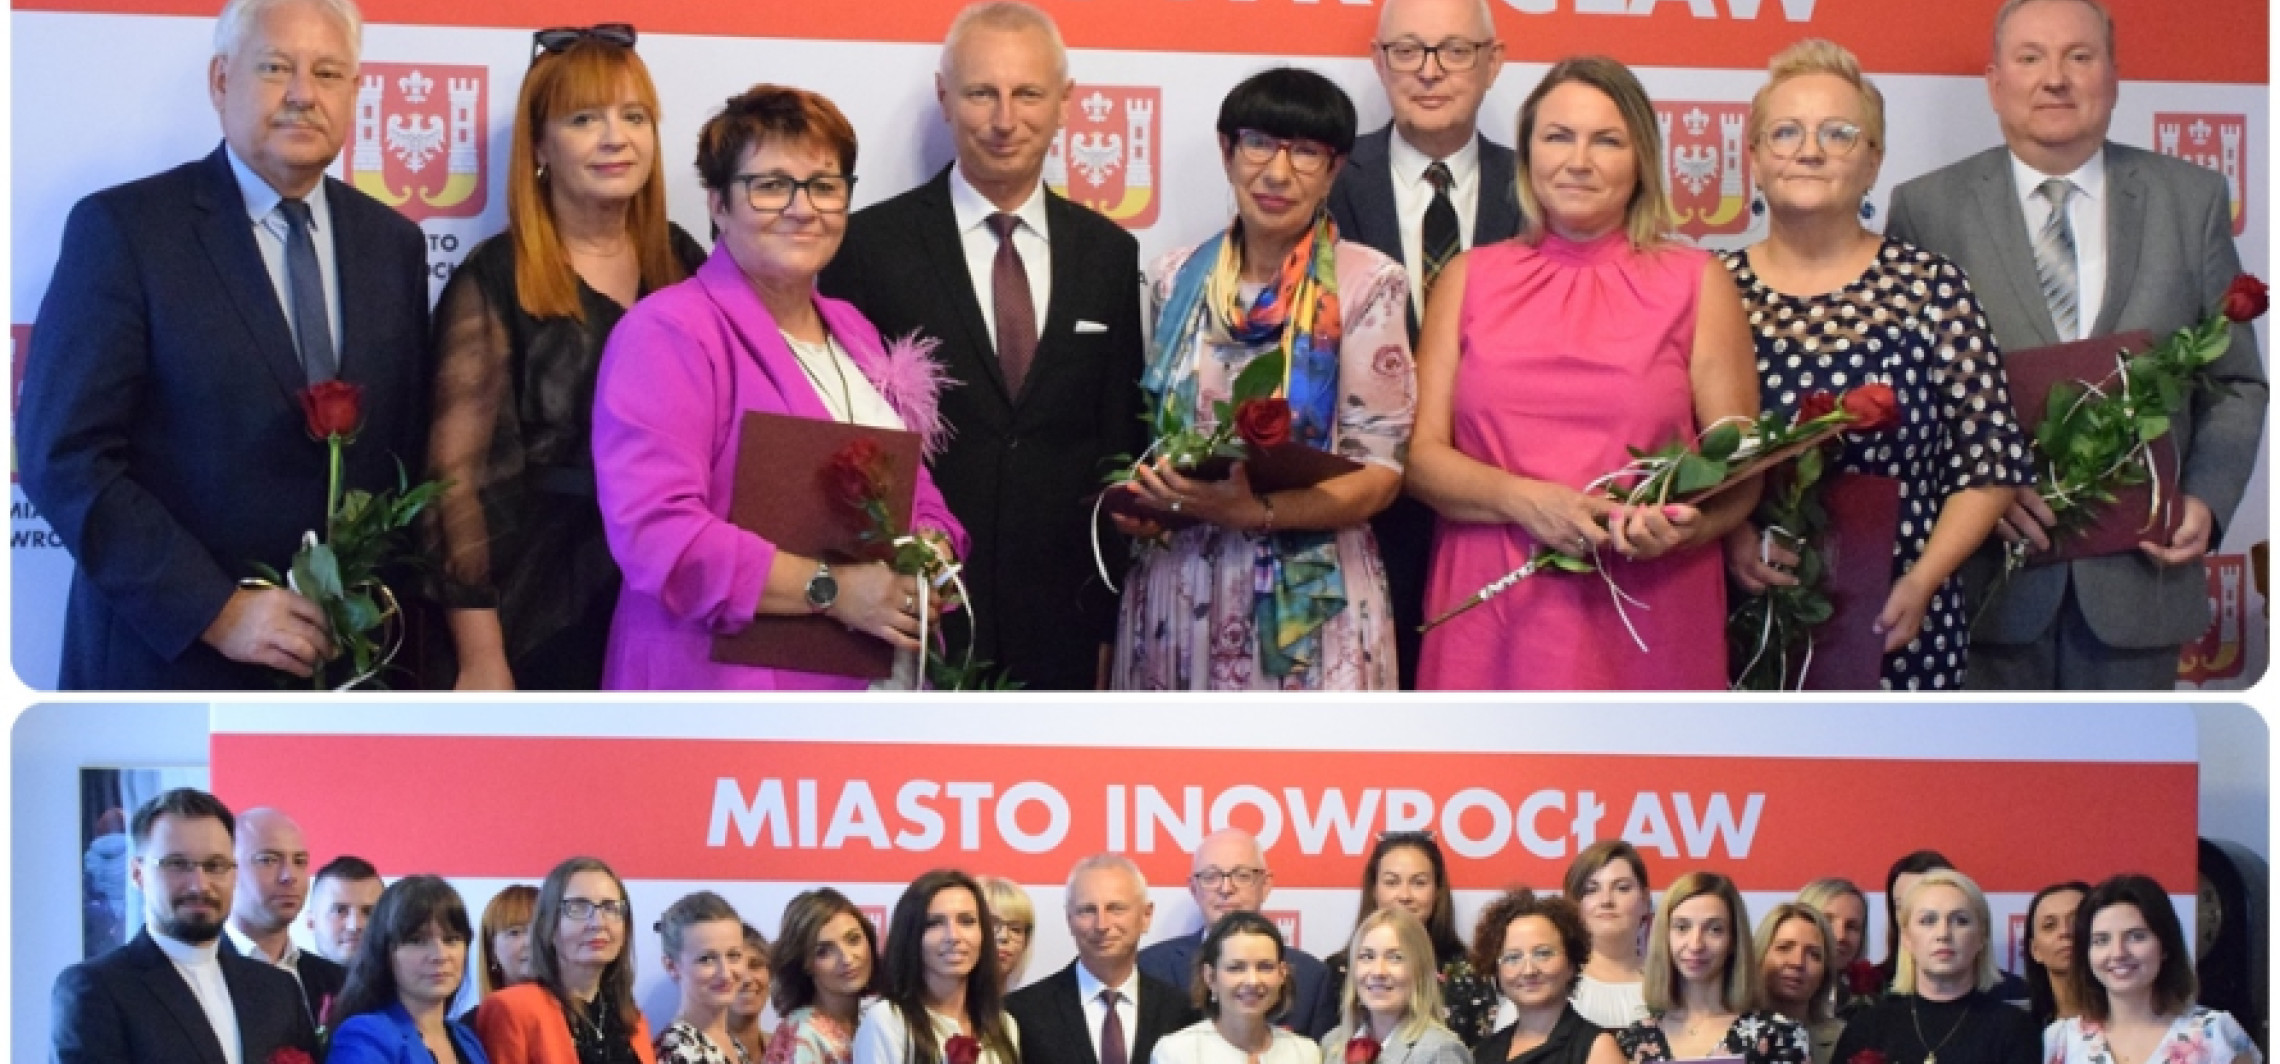 Inowrocław - Prezydent wręczył im akty nadania stopnia nauczyciela mianowanego